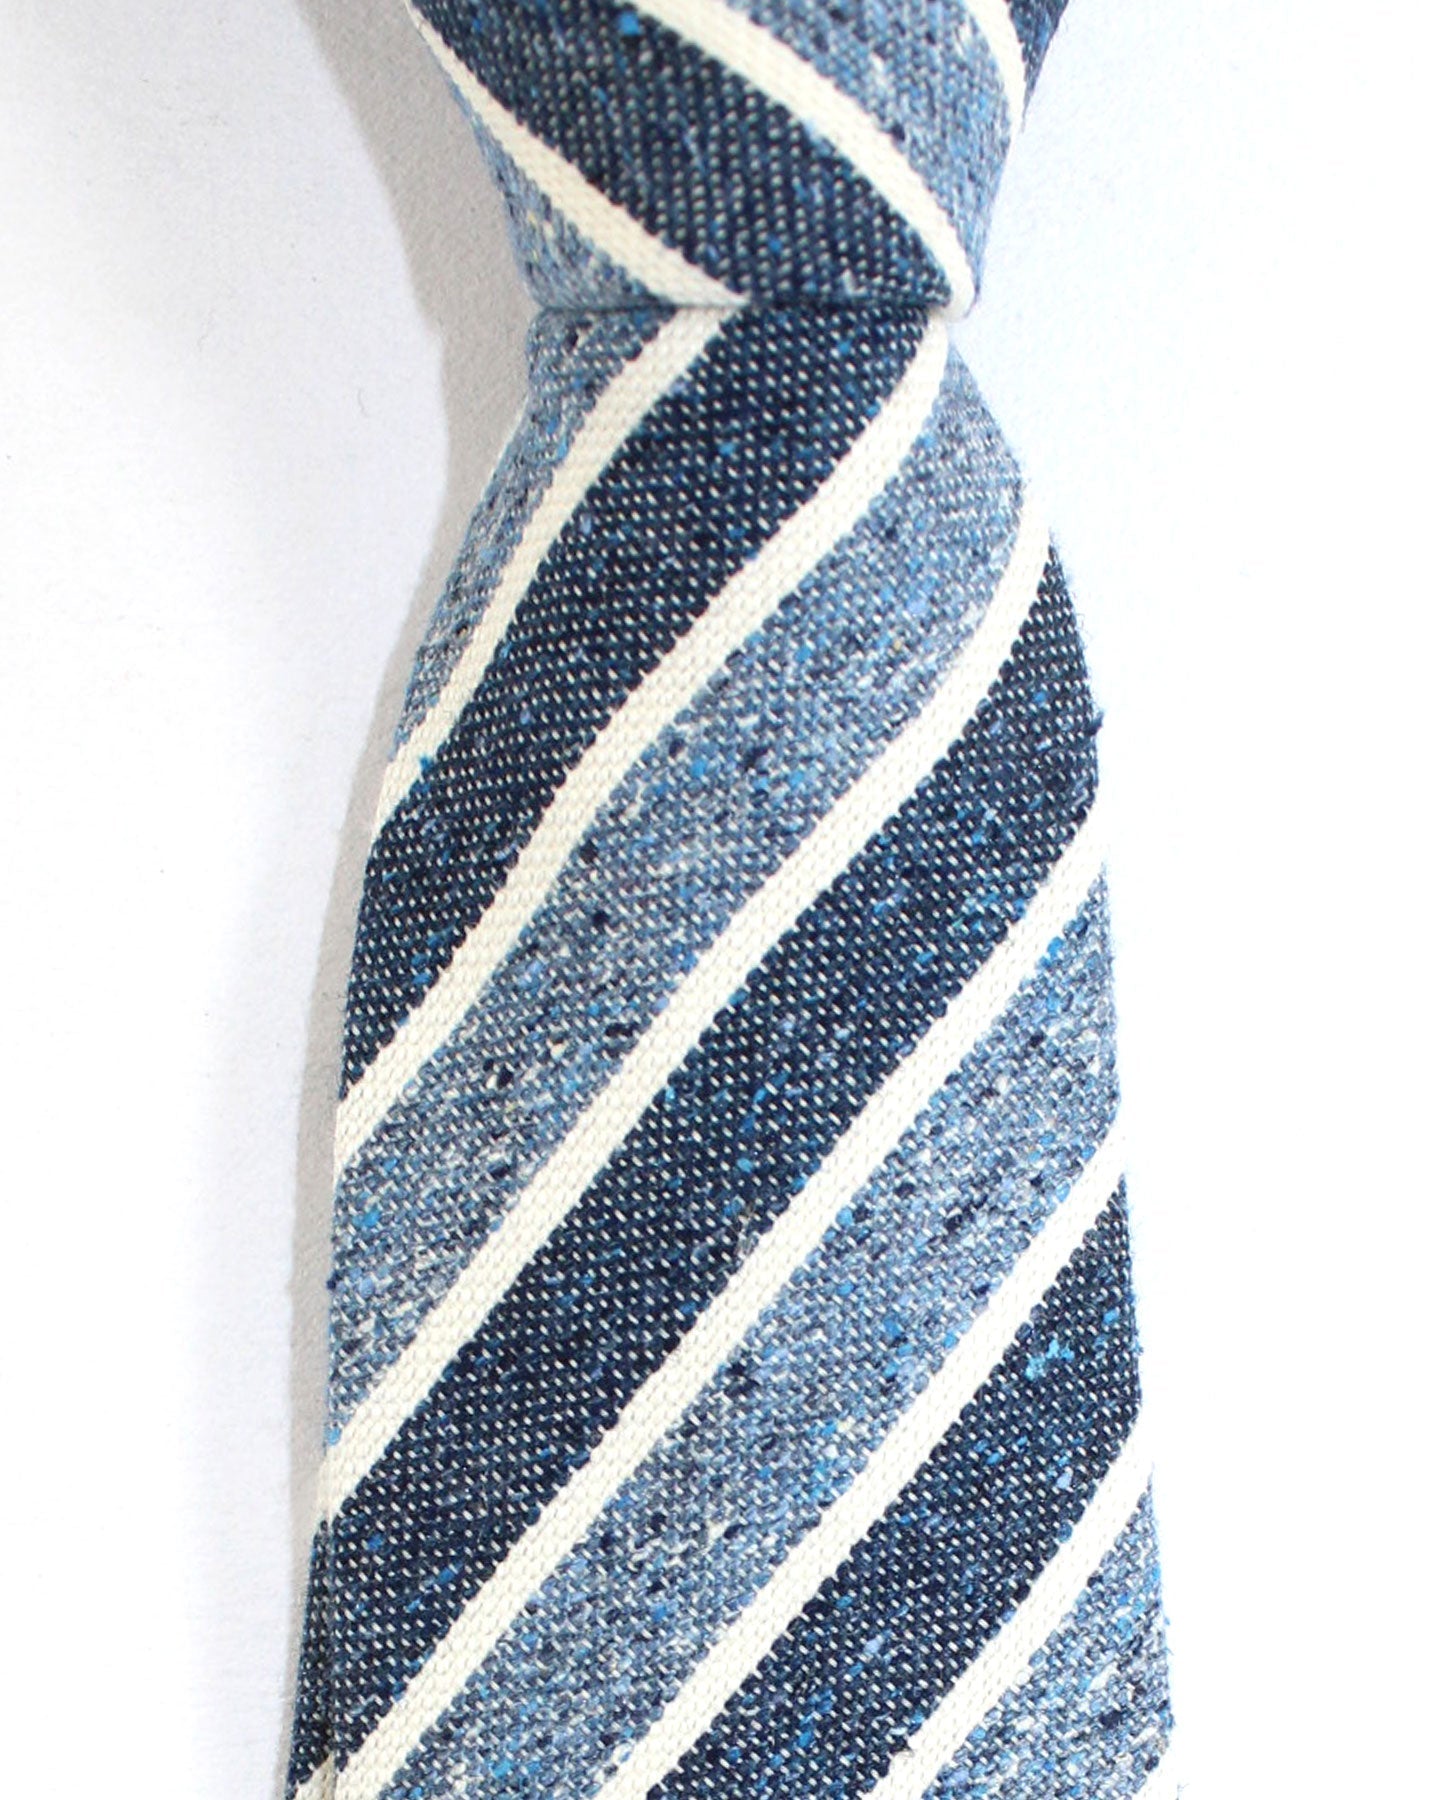 Ungaro Silk Tie Dark Blue Metallic Blue Stripes - Narrow Cut Designer Necktie